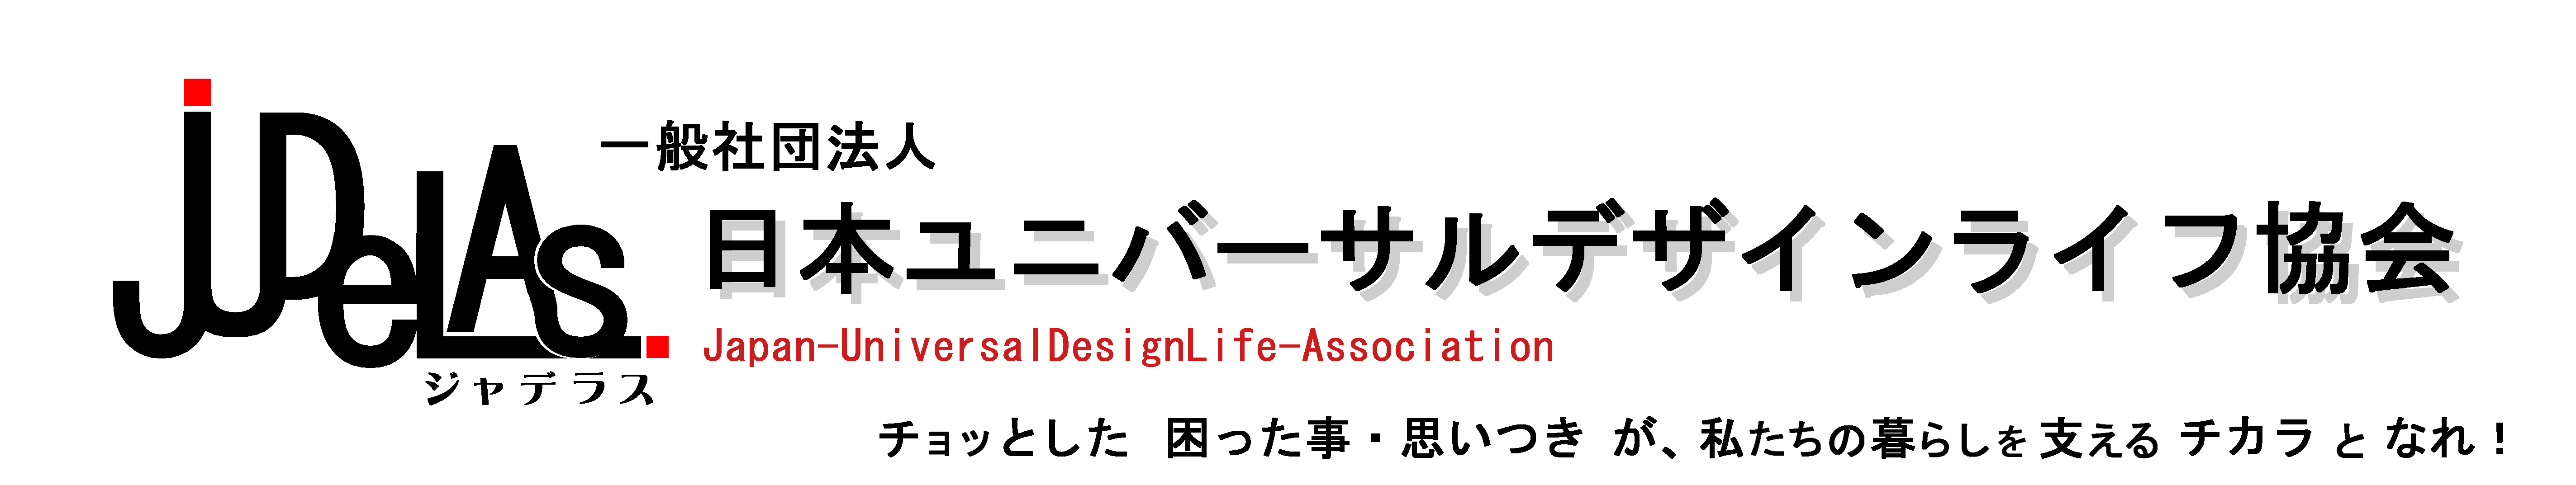 チョッとした 困った事・思いつきが、私たちの暮らしを支えるチカラとなれ！「一般社団法人 日本ユニバーサルデザインライフ協会」